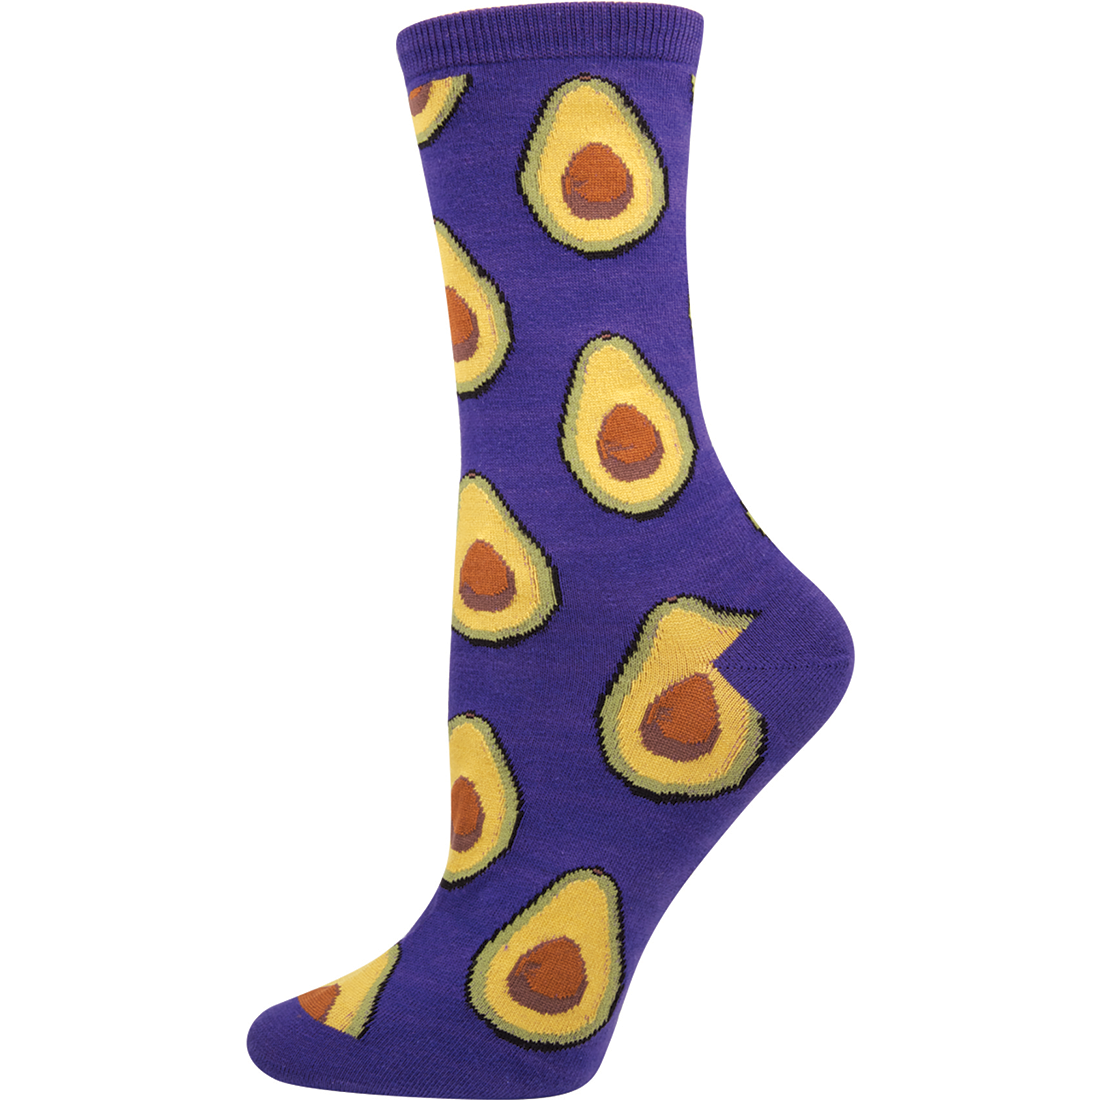 Avocado Purple Novelty Socks - Women's